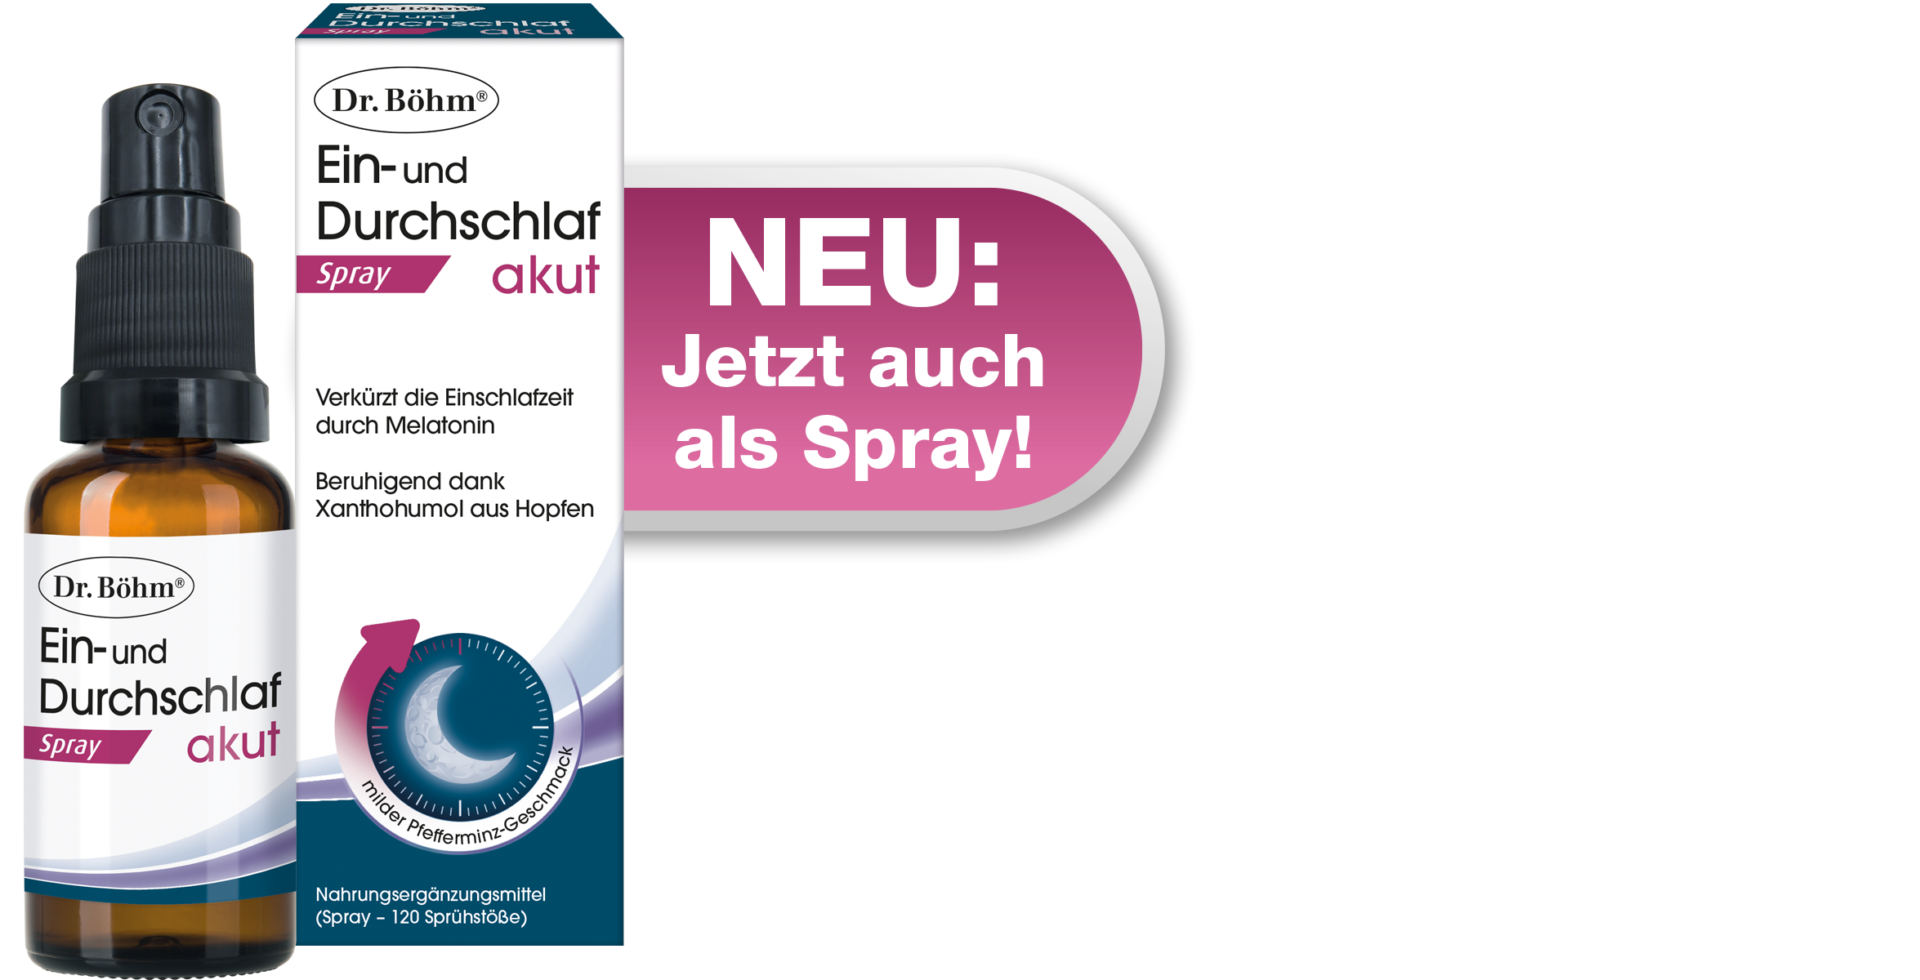 Dr. Böhm® Ein- und Durchschlaf akut Melatonin-Spray aus der Apotheke mit Xanthohumol aus Hopfen